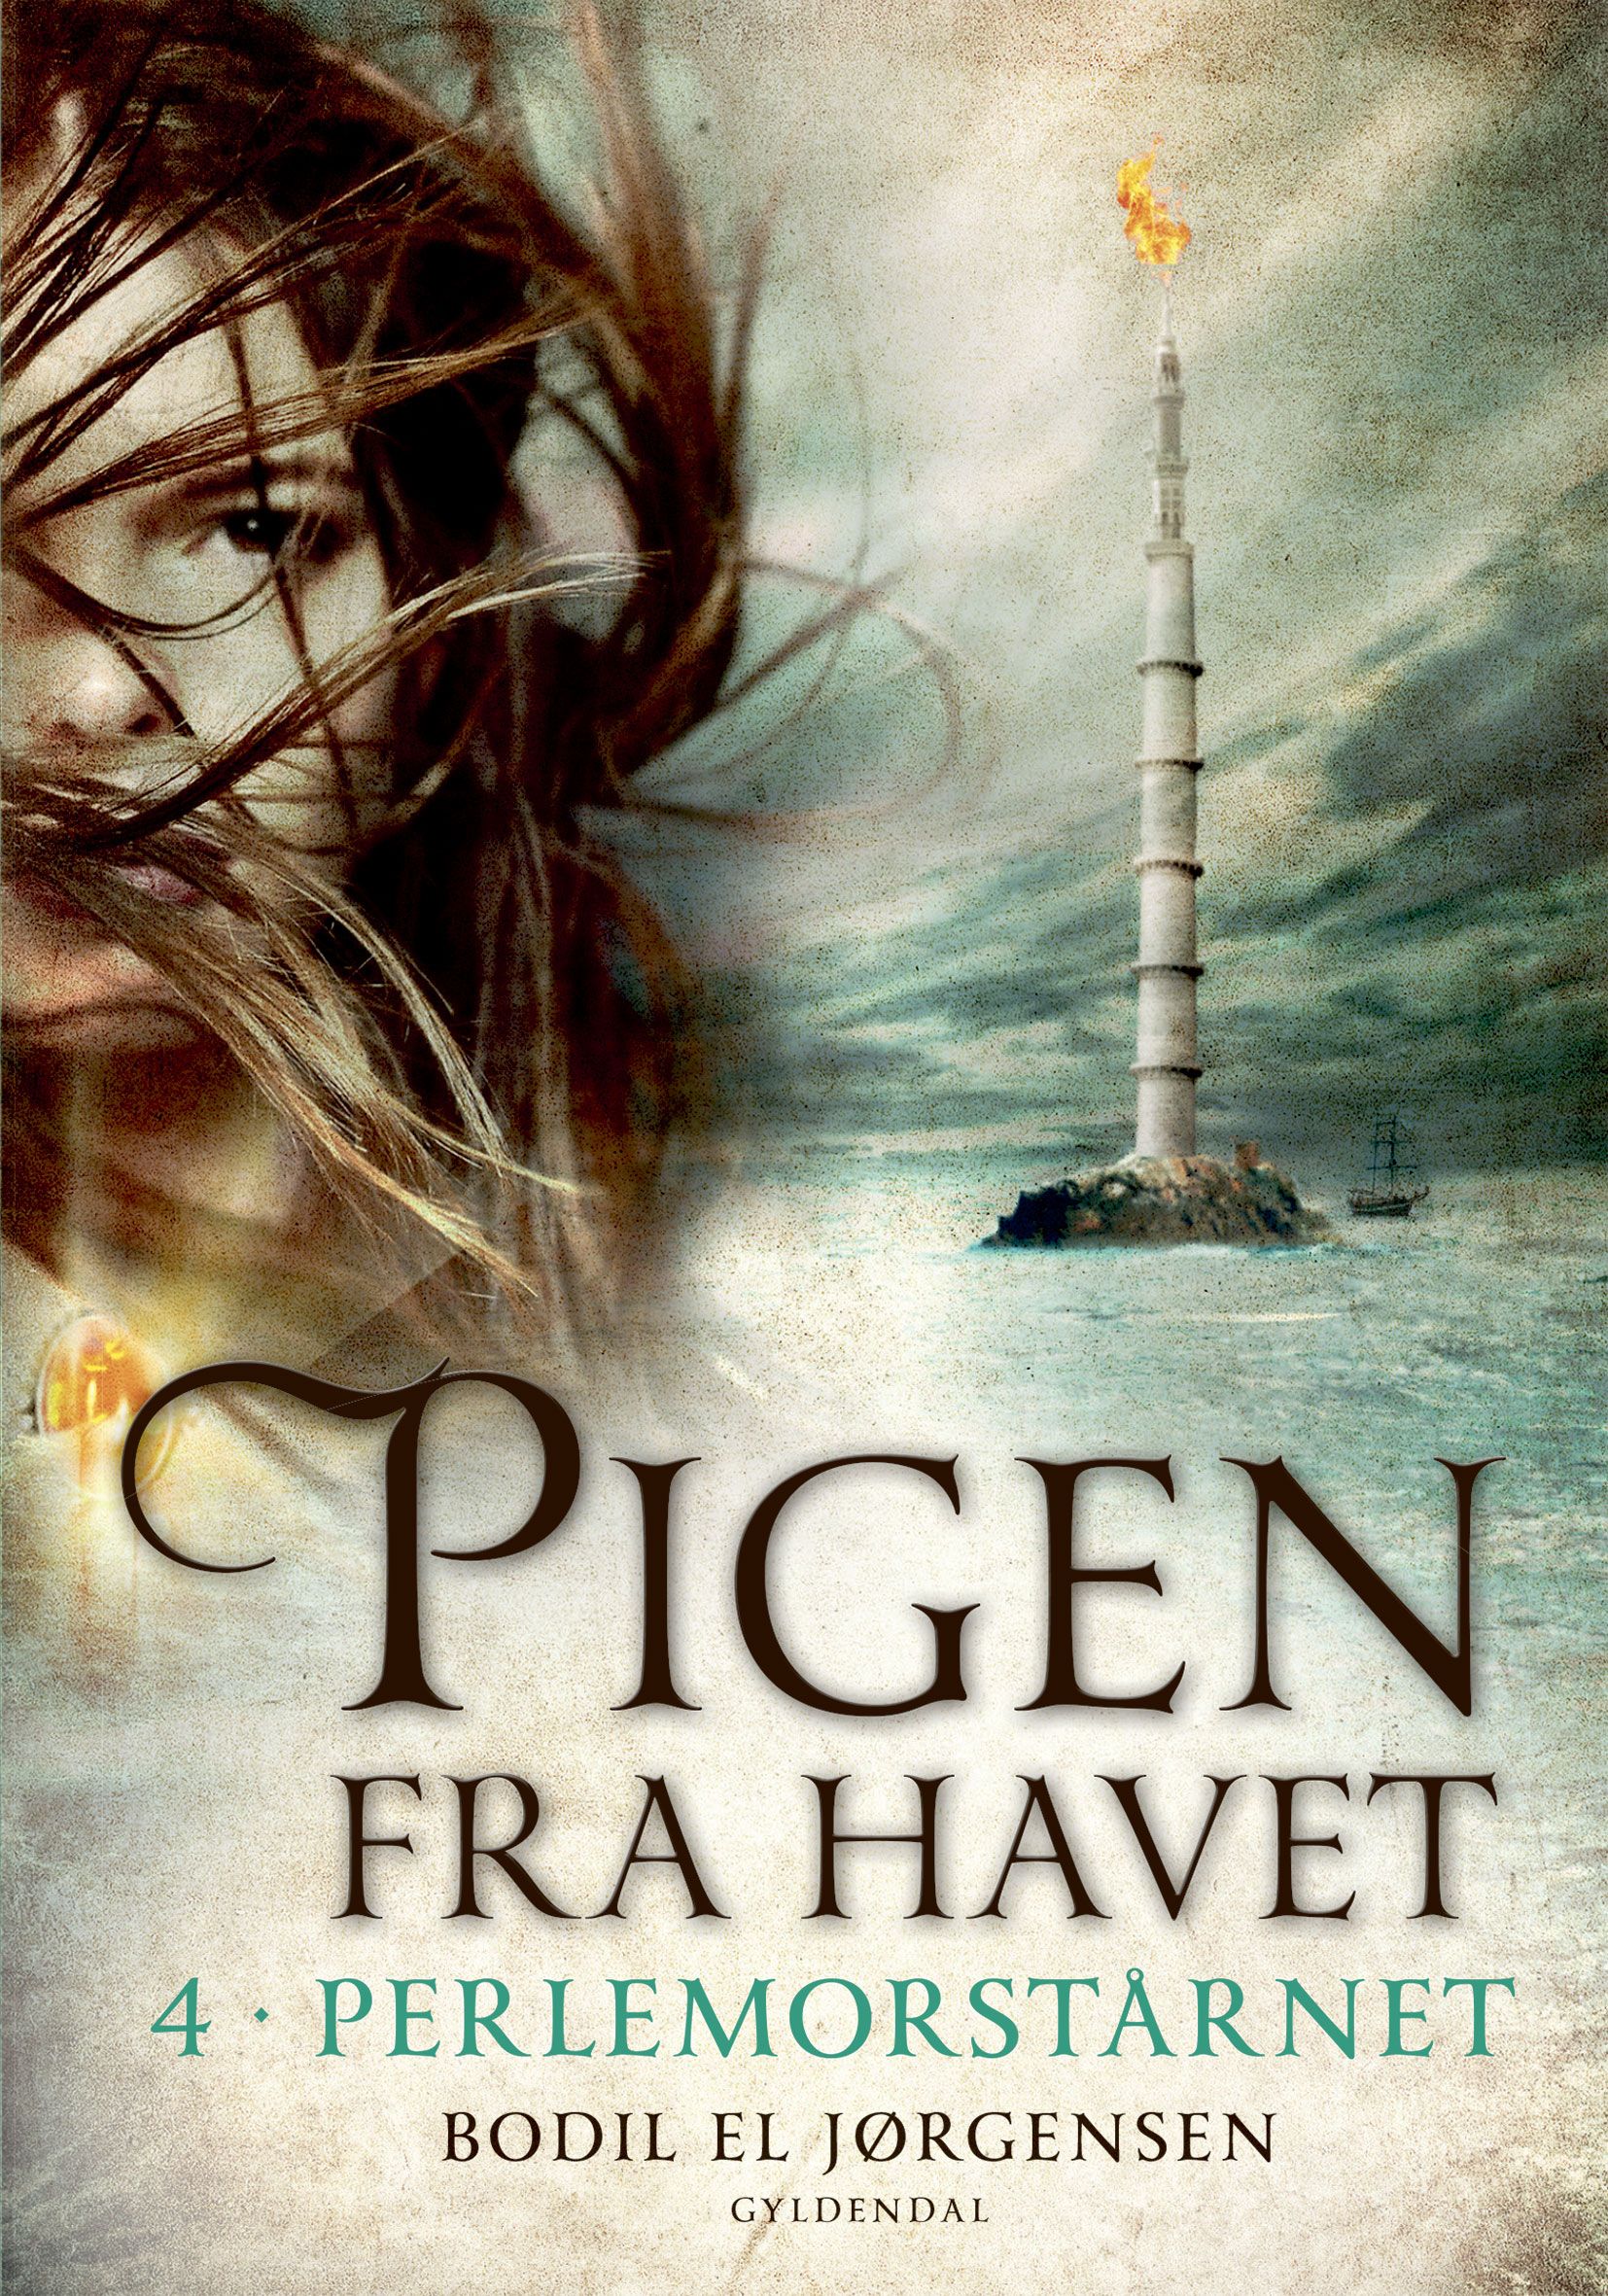 Pigen fra havet 4 - Perlemorstårnet, eBook by Bodil El Jørgensen